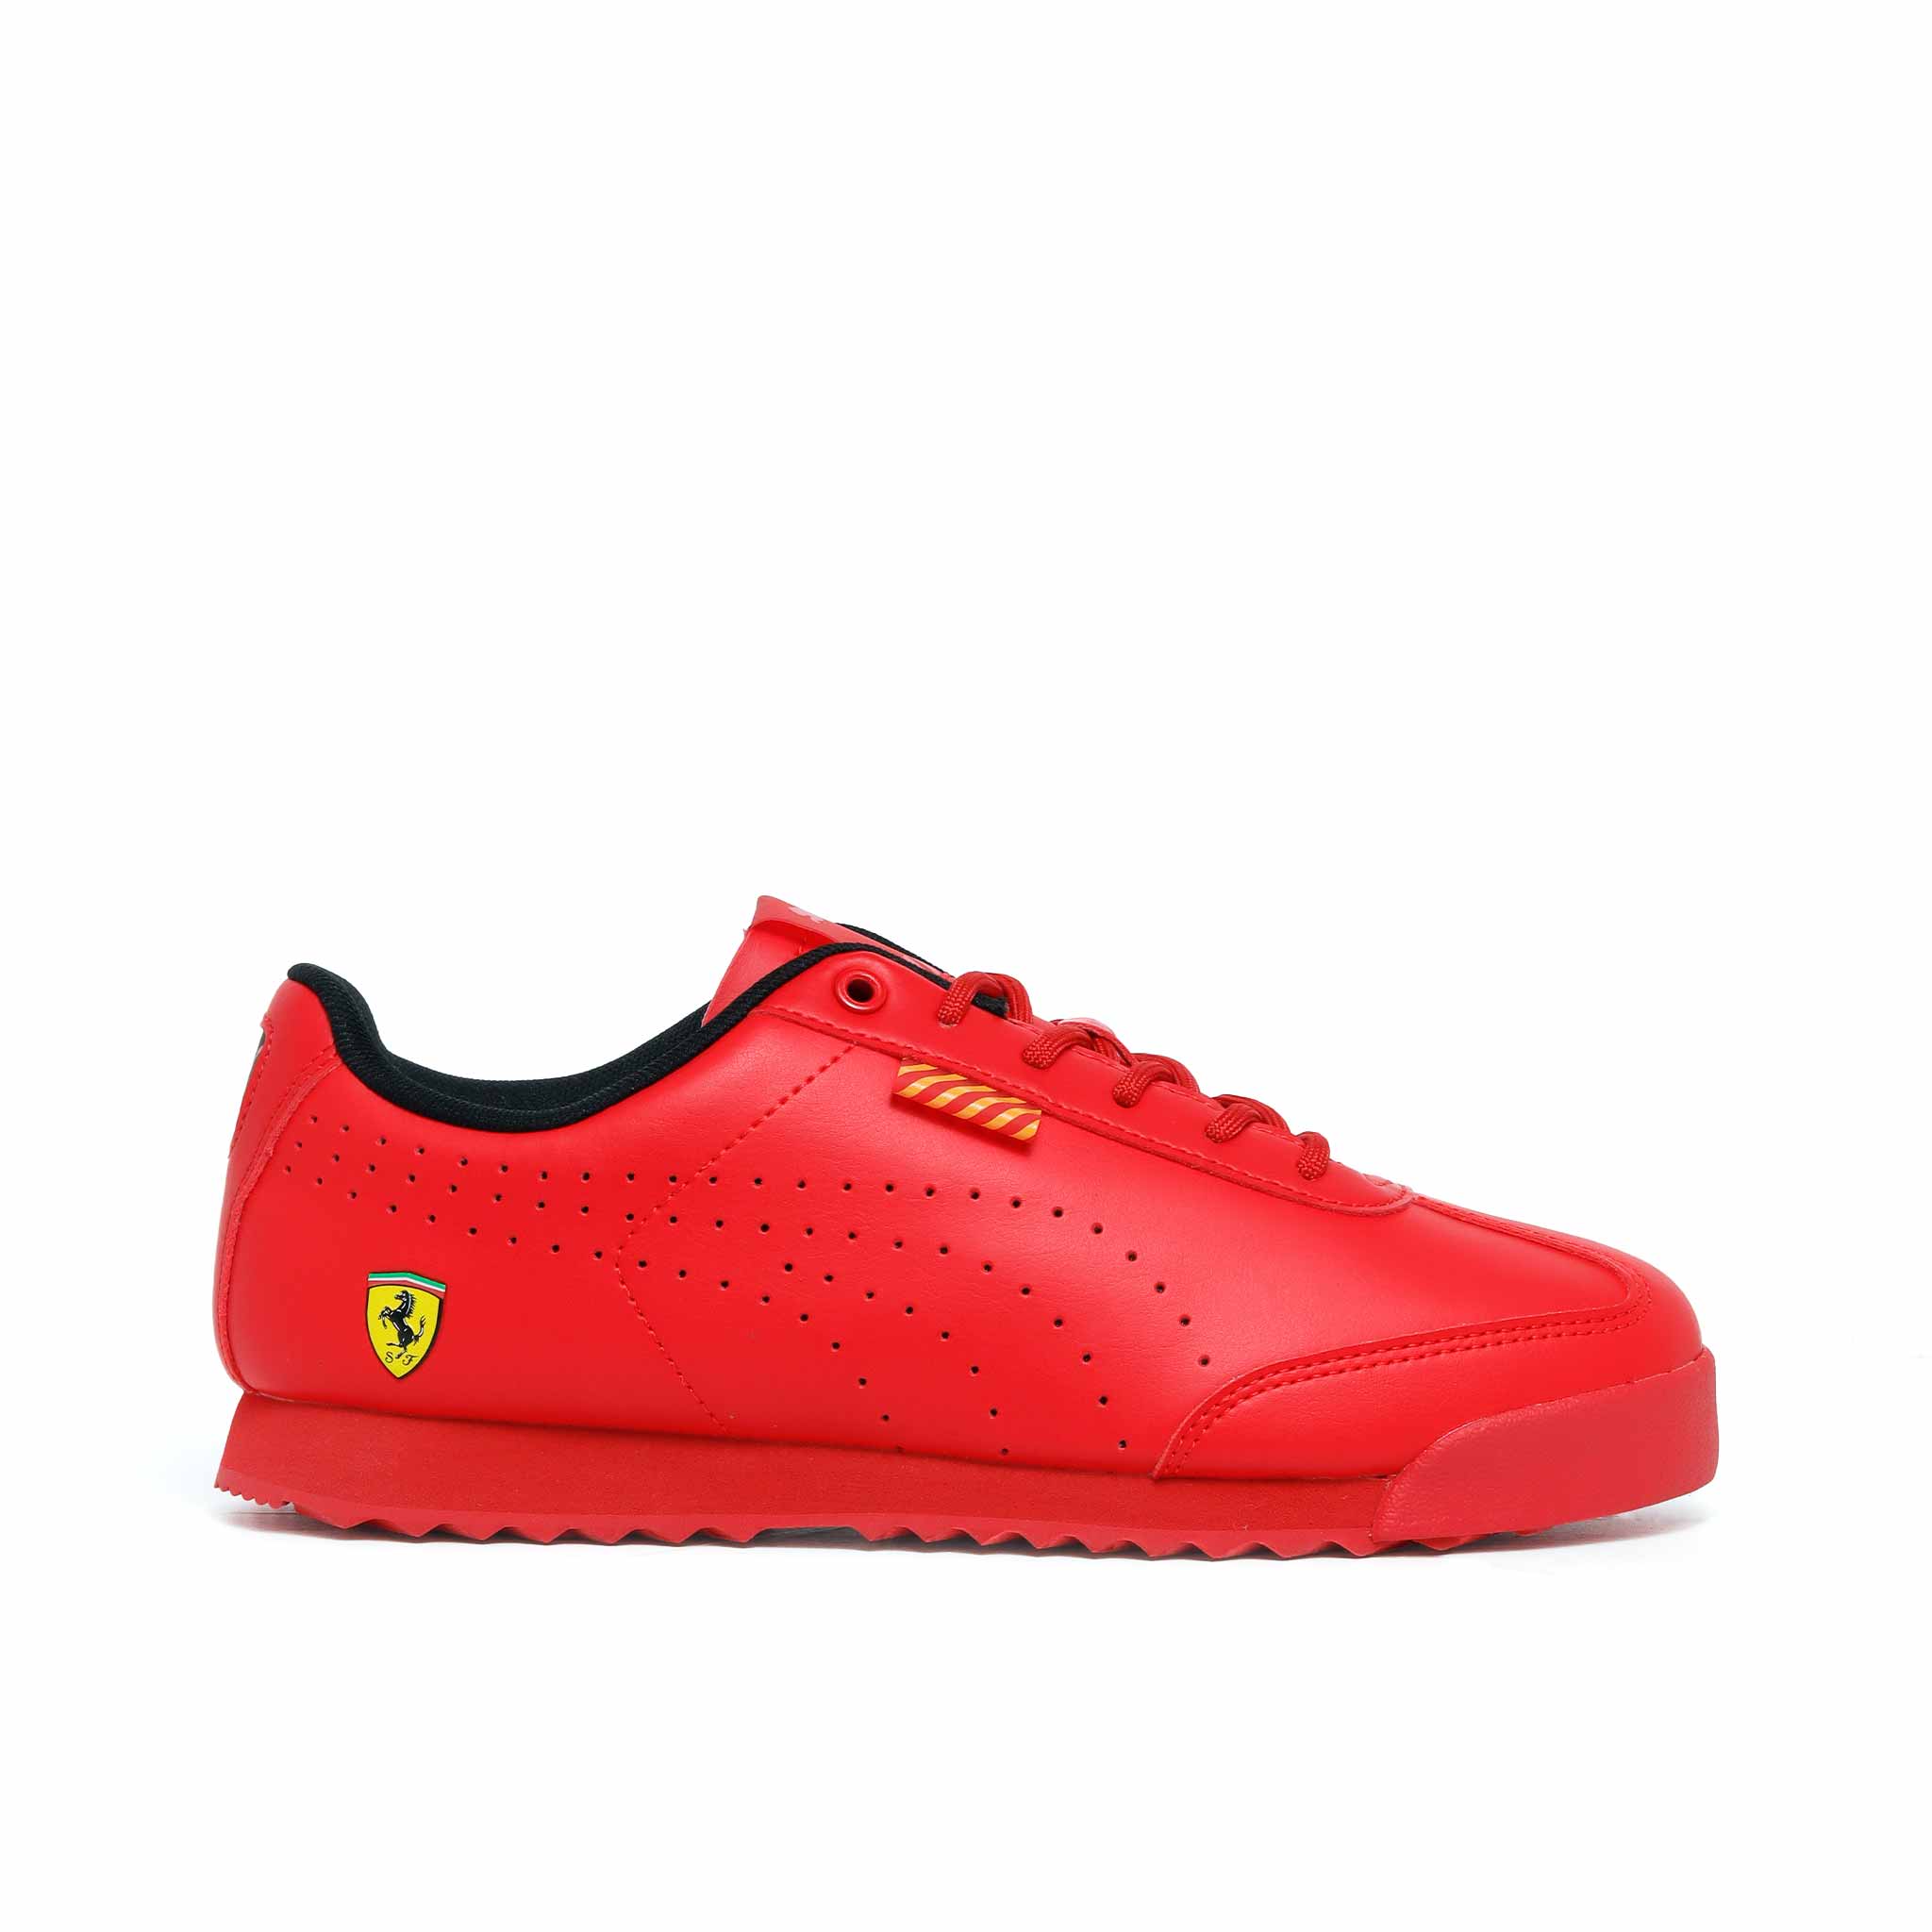 Tenis Puma Ferrari Hombre 306855 03 Rojo